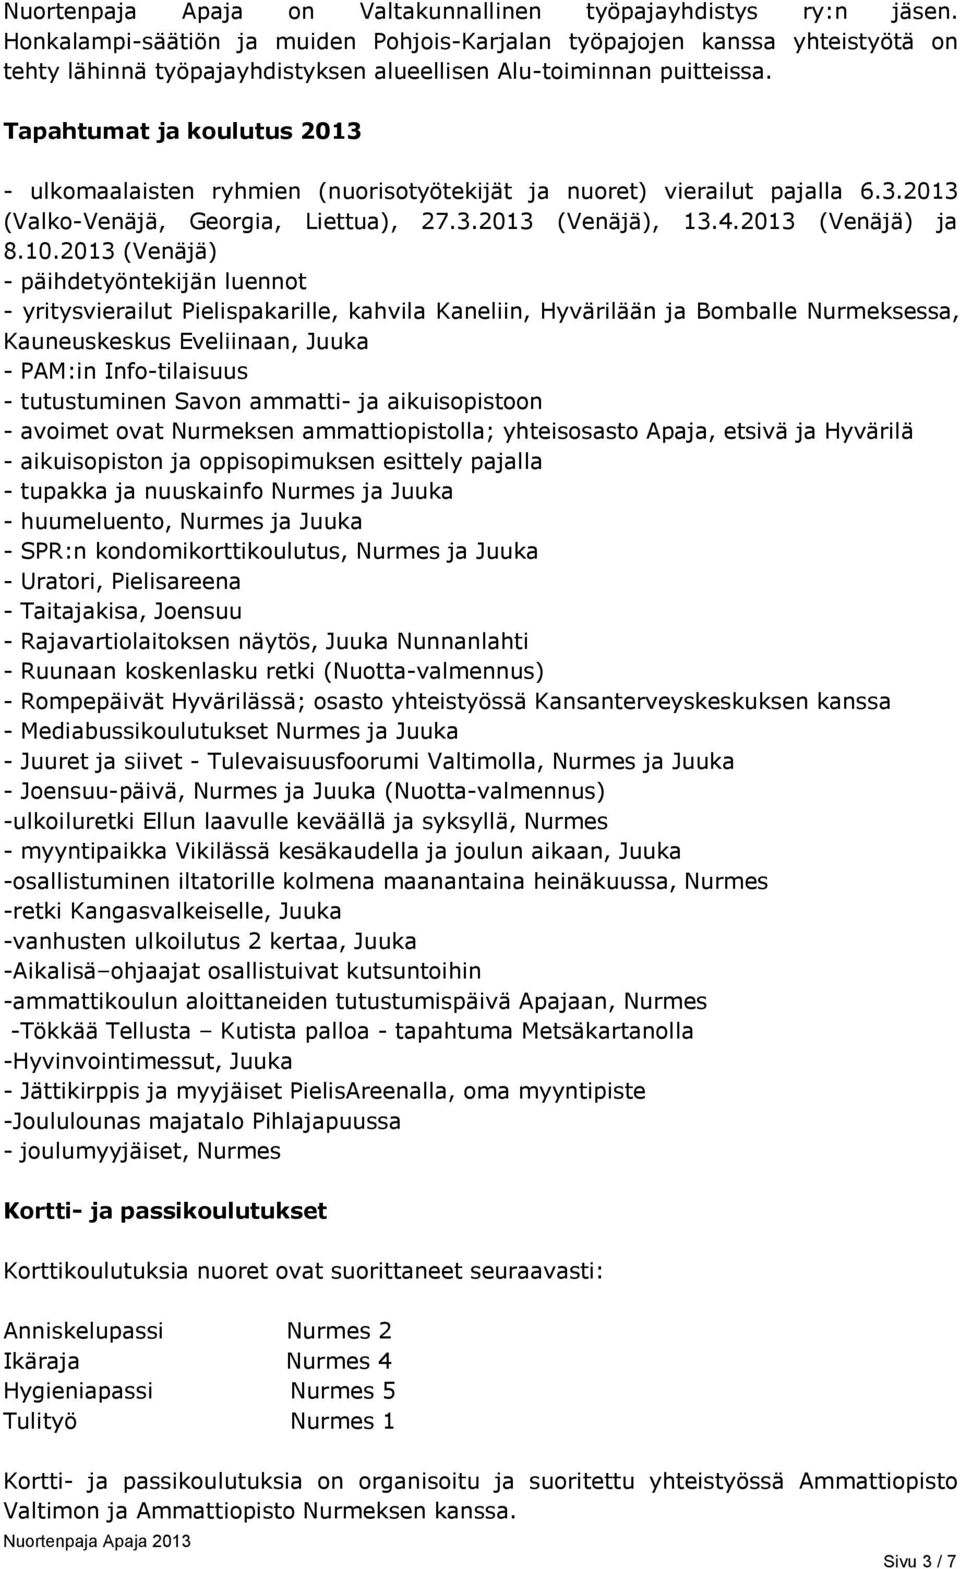 Tapahtumat ja koulutus 2013 - ulkomaalaisten ryhmien (nuorisotyötekijät ja nuoret) vierailut pajalla 6.3.2013 (Valko-Venäjä, Georgia, Liettua), 27.3.2013 (Venäjä), 13.4.2013 (Venäjä) ja 8.10.